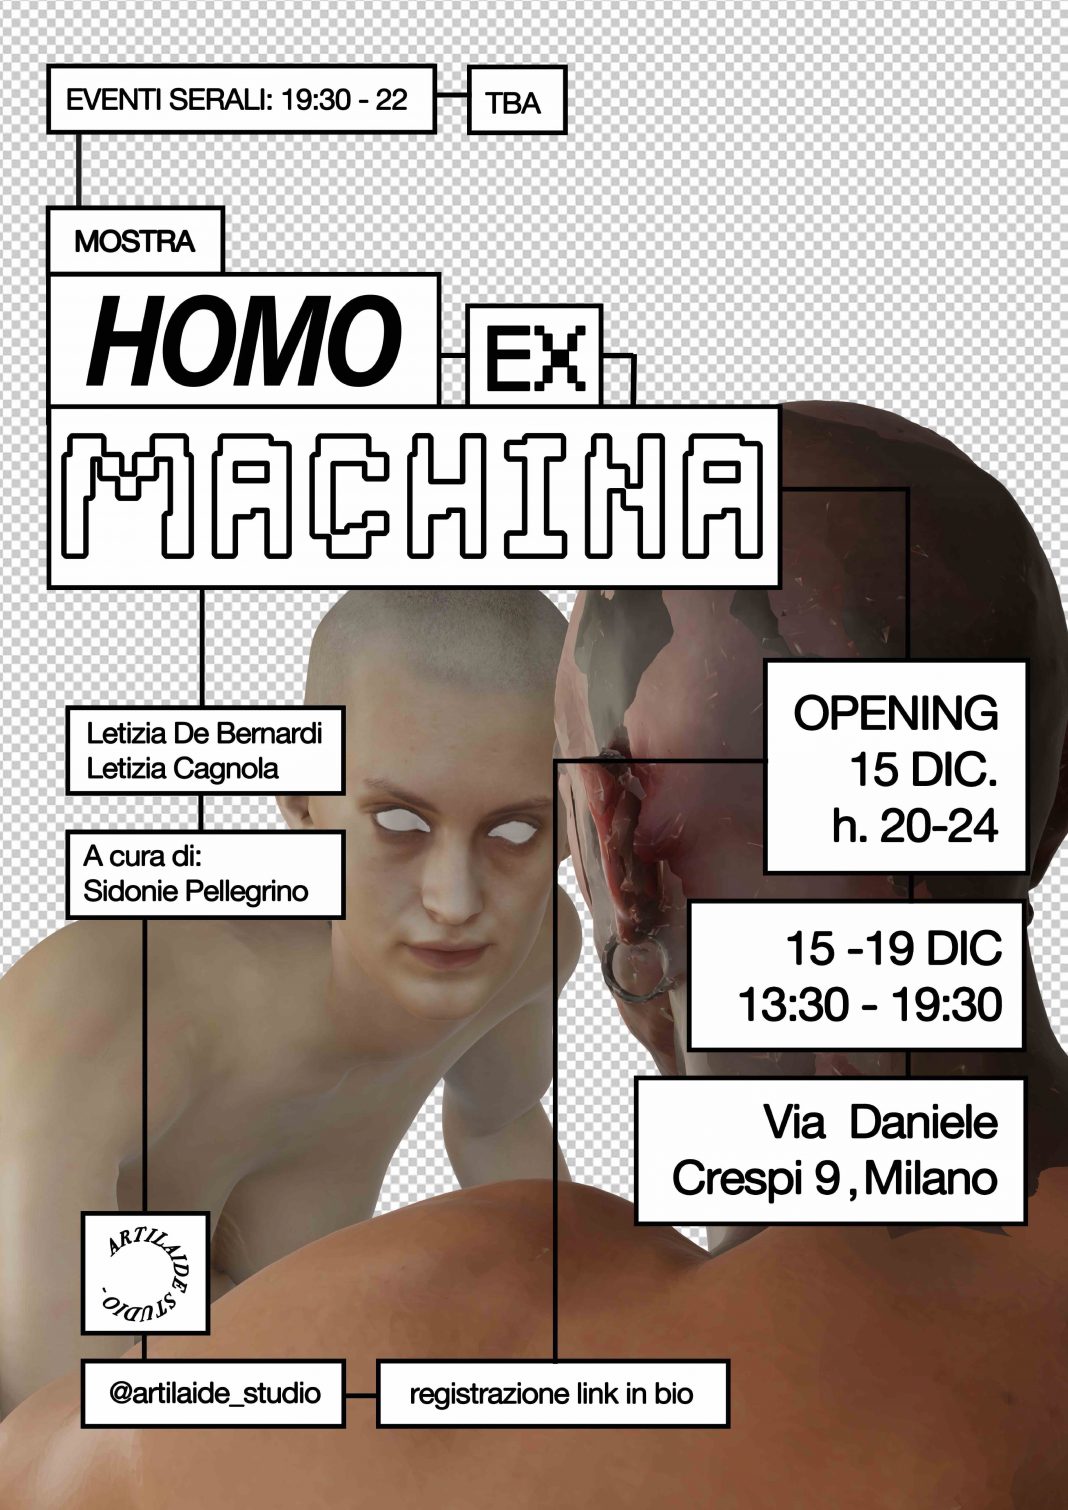 Letizia Cagnola / Letizia De Bernardi – HOMO EX MACHINAhttps://www.exibart.com/repository/media/formidable/11/img/039/HOMO_EX_MACHINA_ARTILAIDE_LOCANDINA-1068x1510.jpg